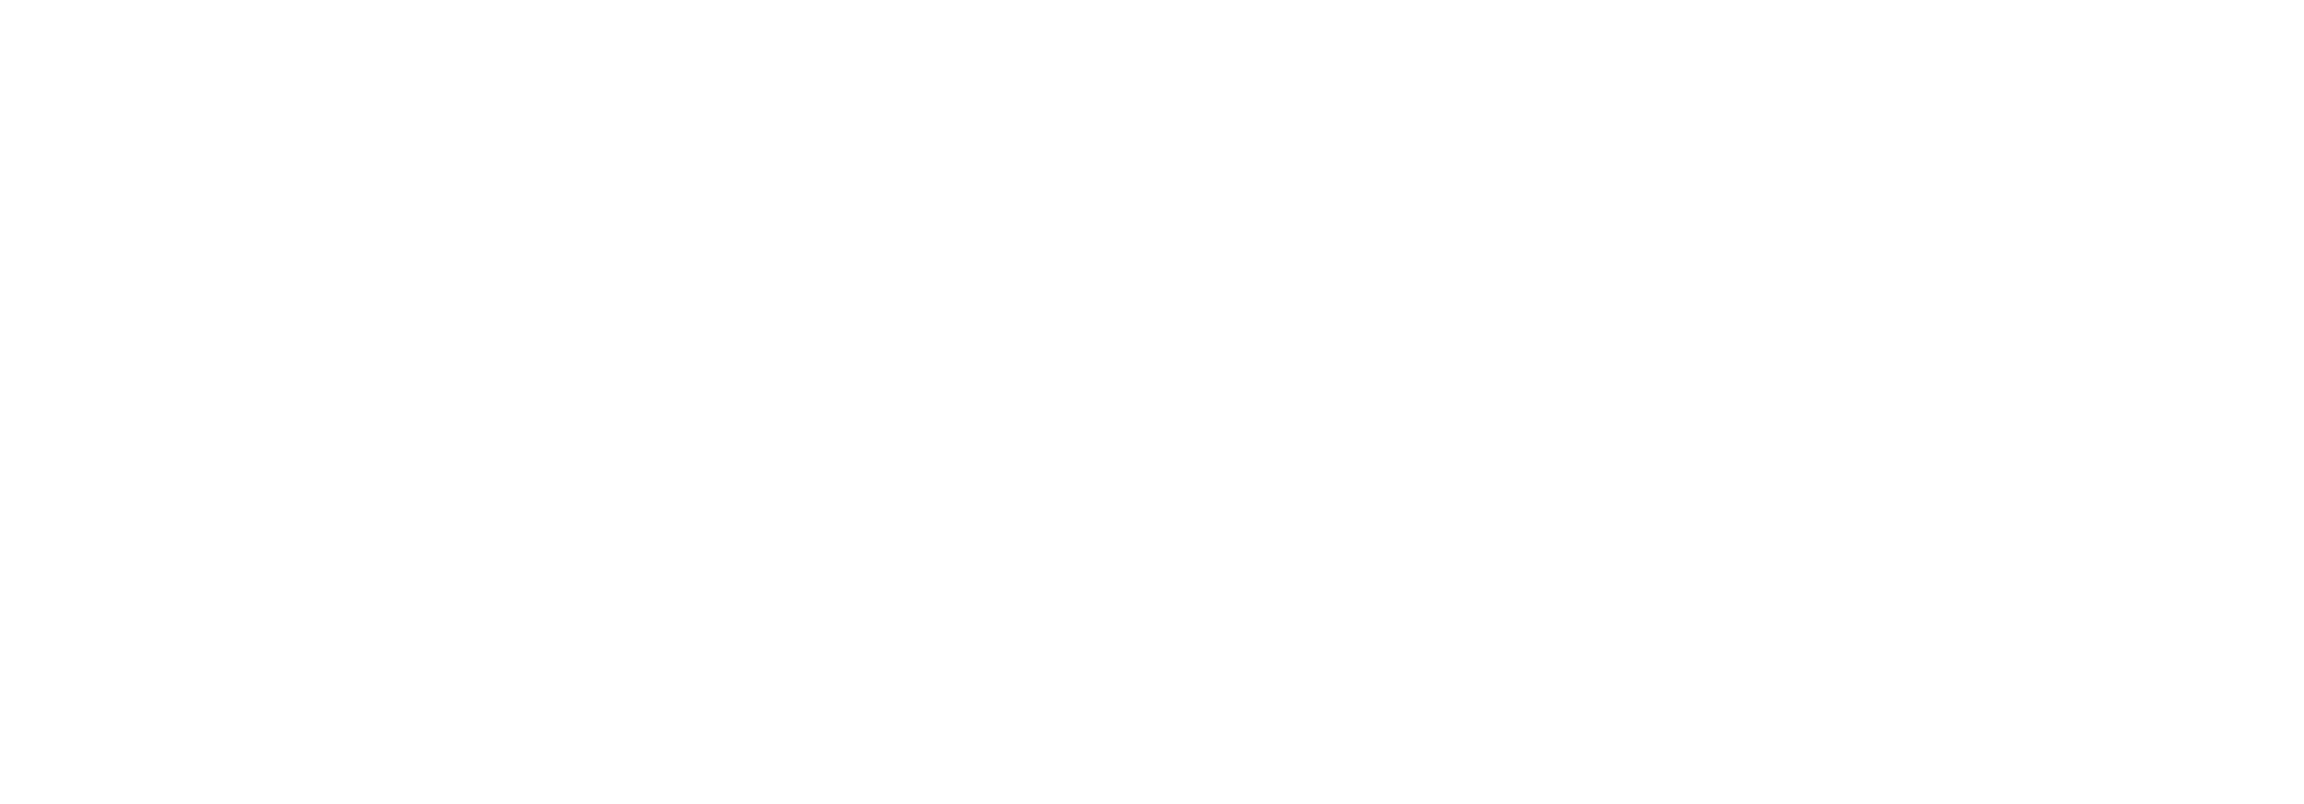 Euler Science logo